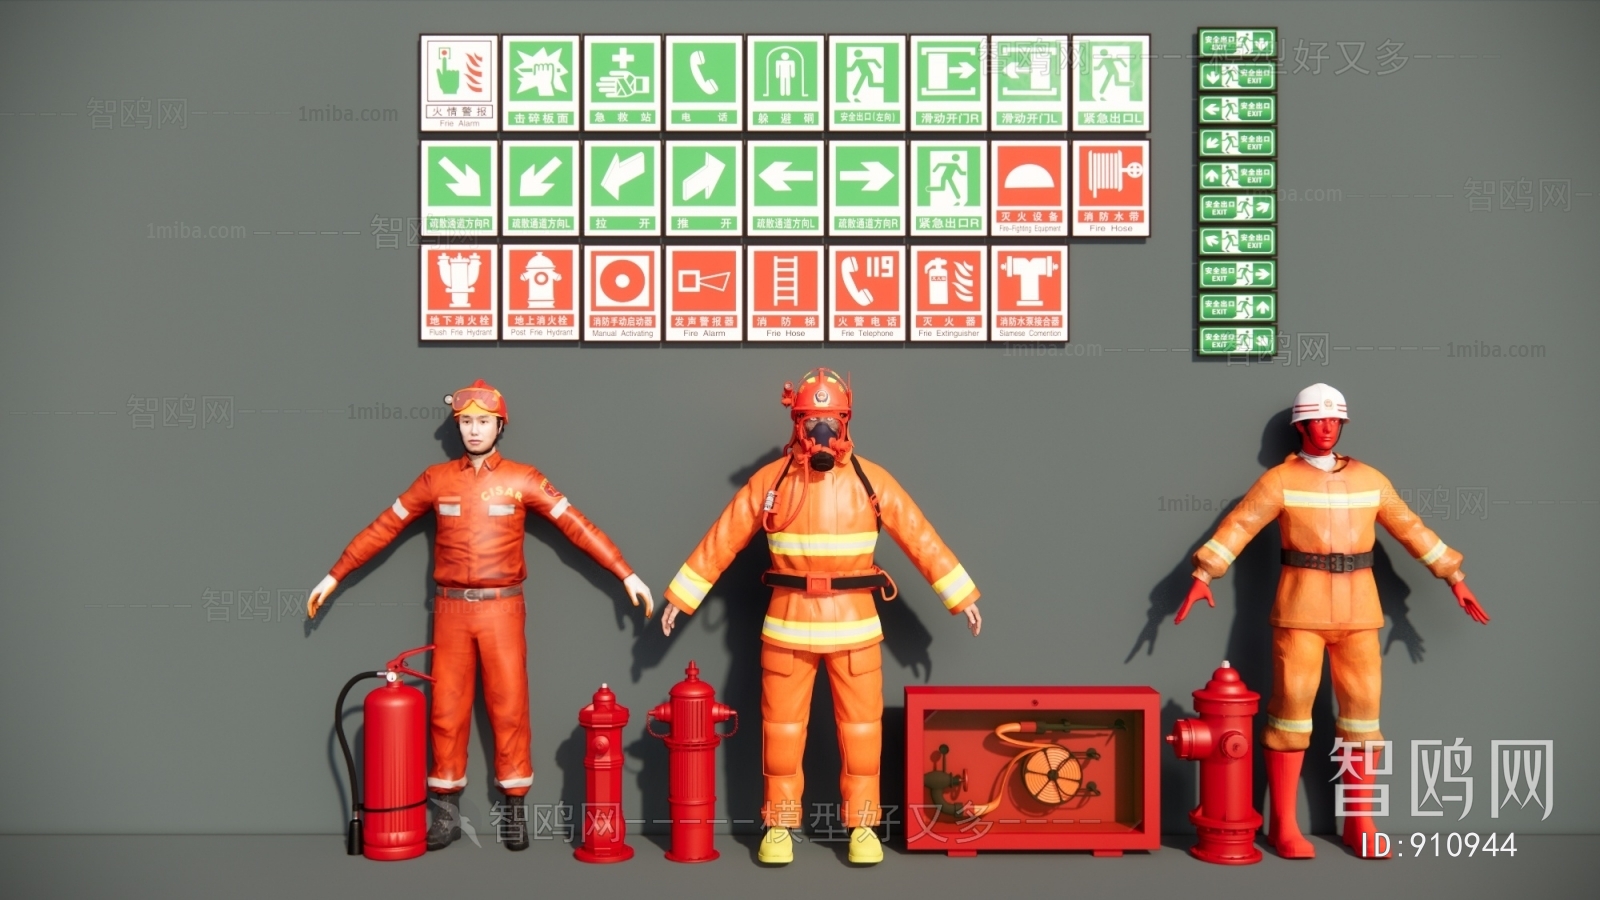 现代消防器材 消防栓 灭火器 指示灯 消防服组合